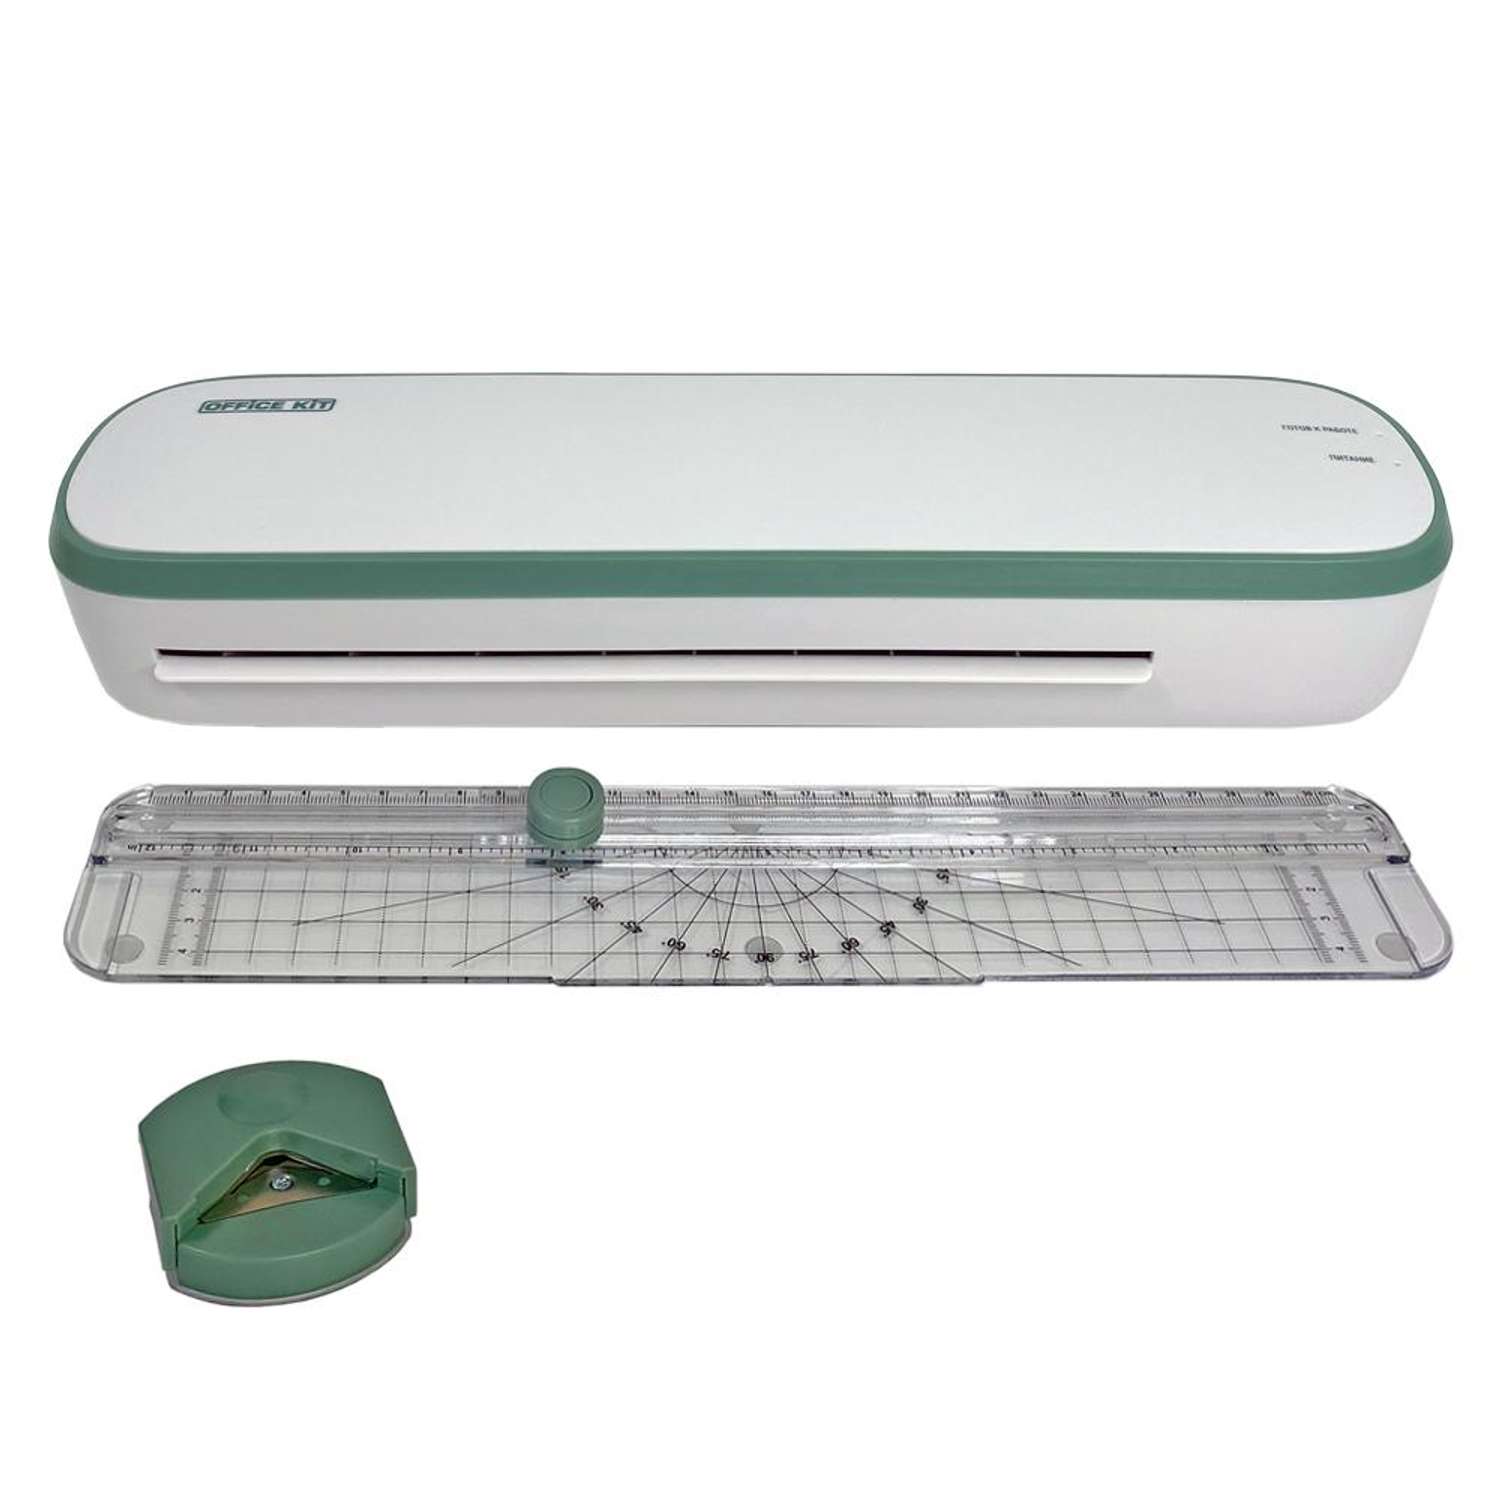 Ламинатор Office Kit цвет зелёный формат А4 толщина плёнки 60-125 мкм мини-резак и обрезчик углов в комплекте - фото 2